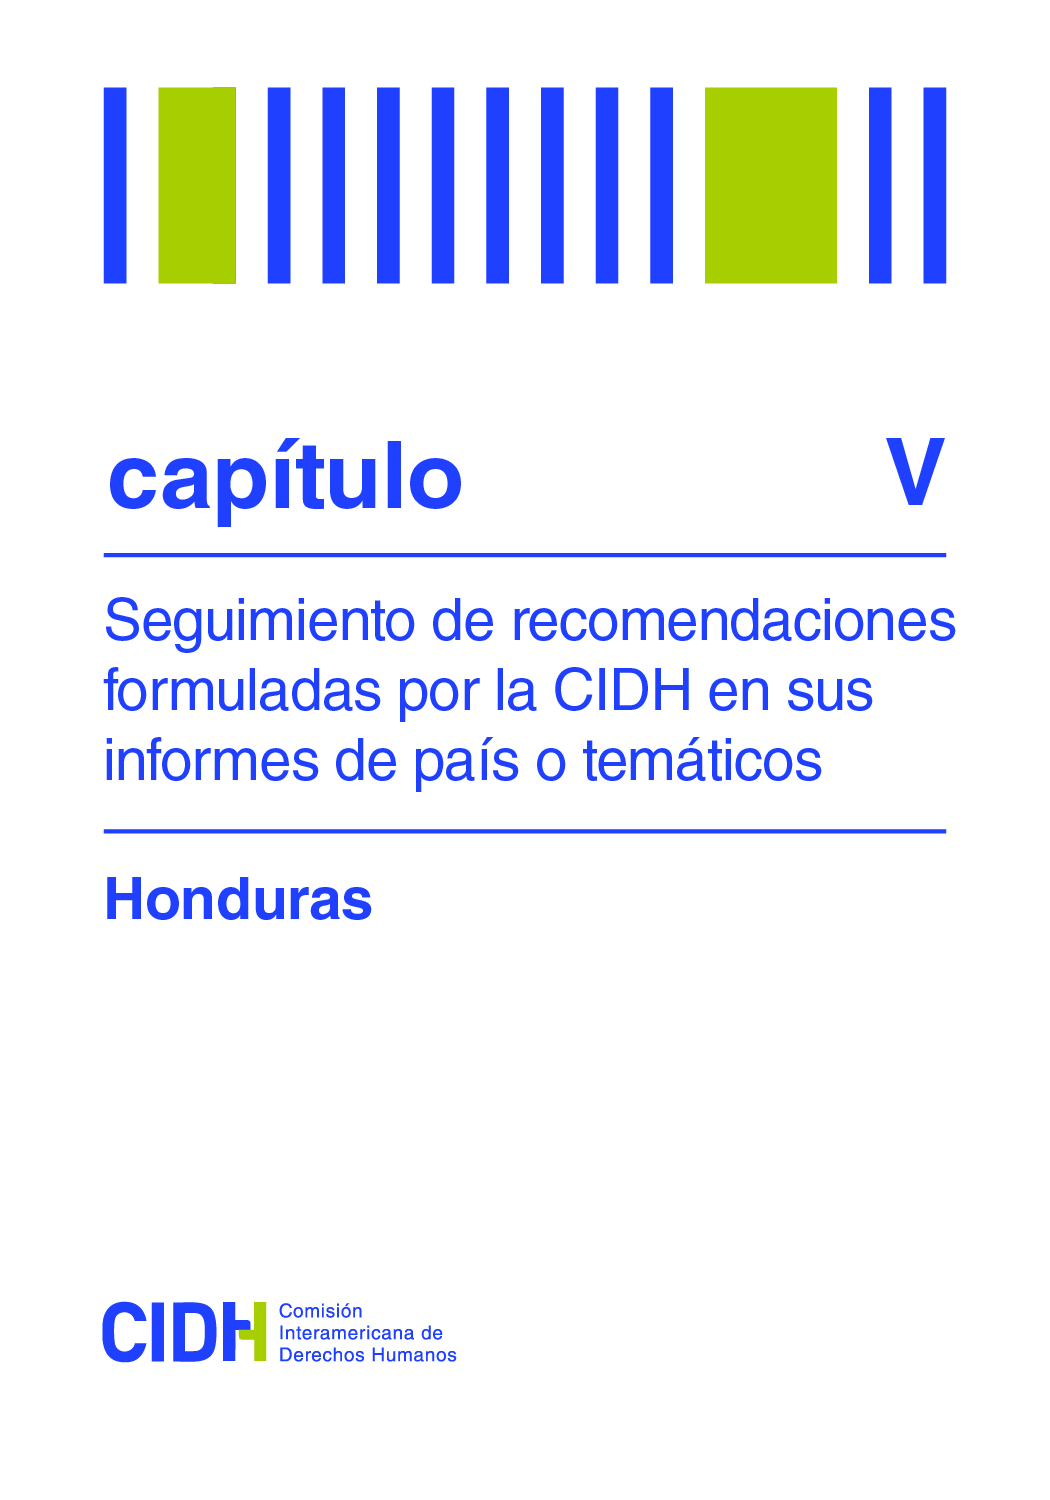 Segundo informe de seguimiento de las recomendaciones formuladas por la CIDH en el Informe sobre la situacin de Derechos Humanos en Honduras